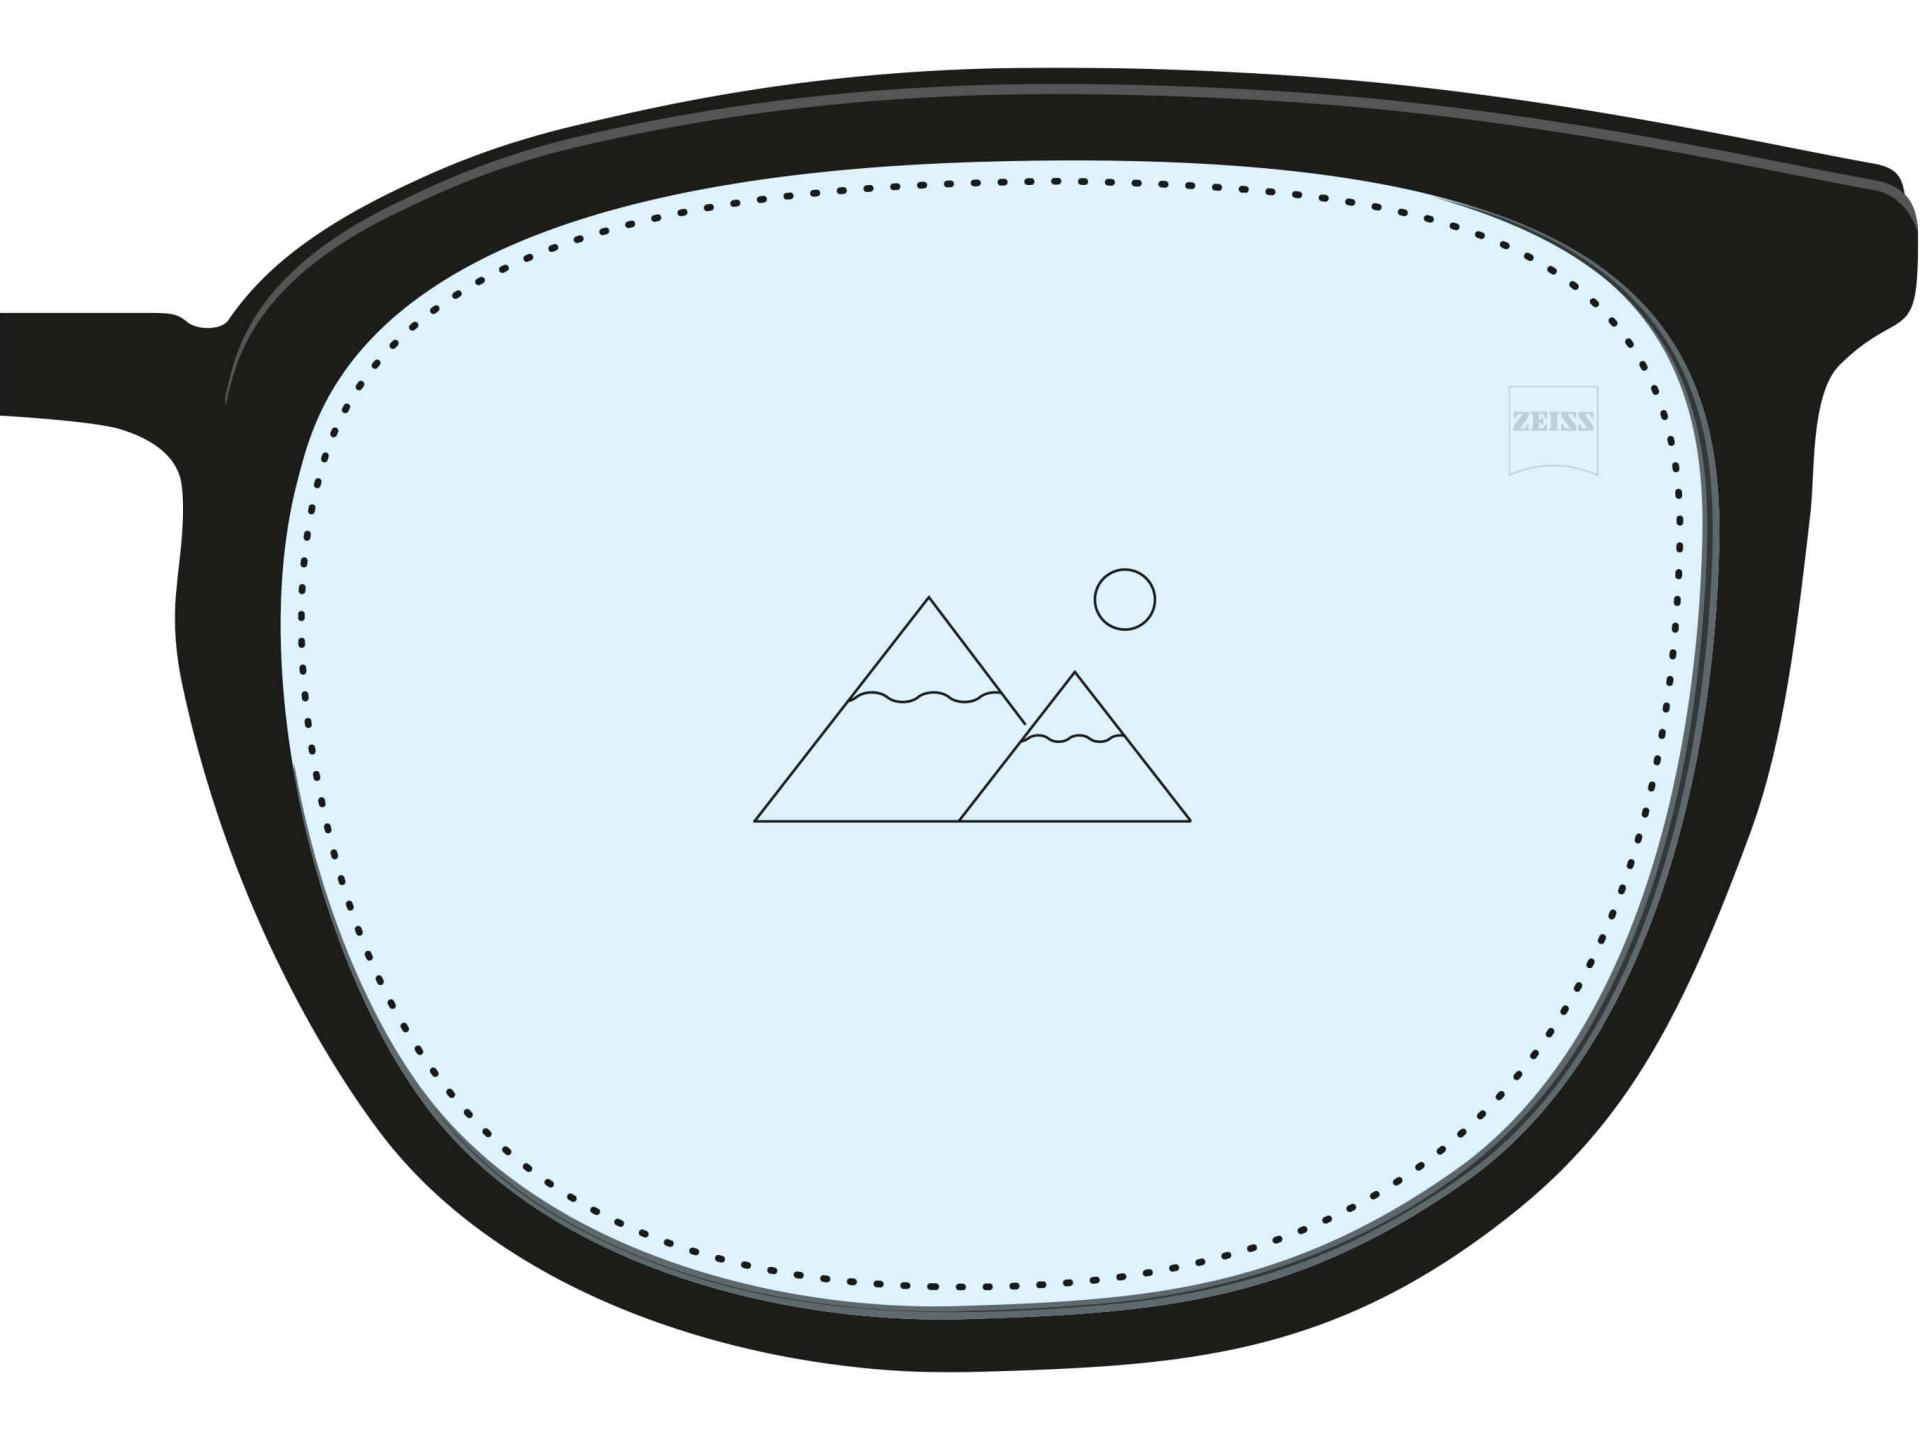 En illustration af et enkeltstyrkebrilleglas. Det er fyldt med en lyseblå farve over det hele, og et enkelt ikon viser at det kun har en styrke til en afstand.